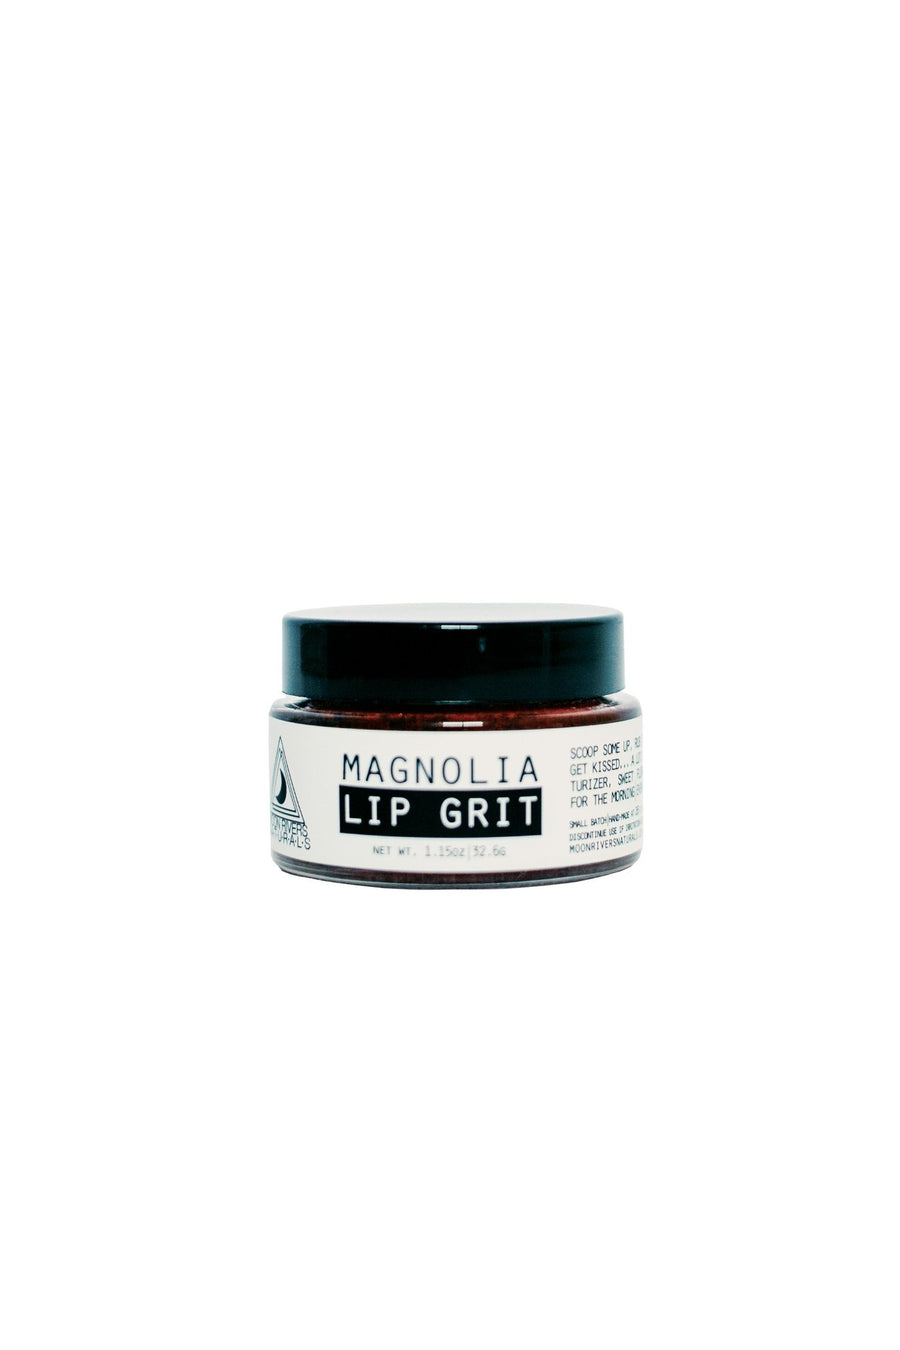 Magnolia Lip Grit